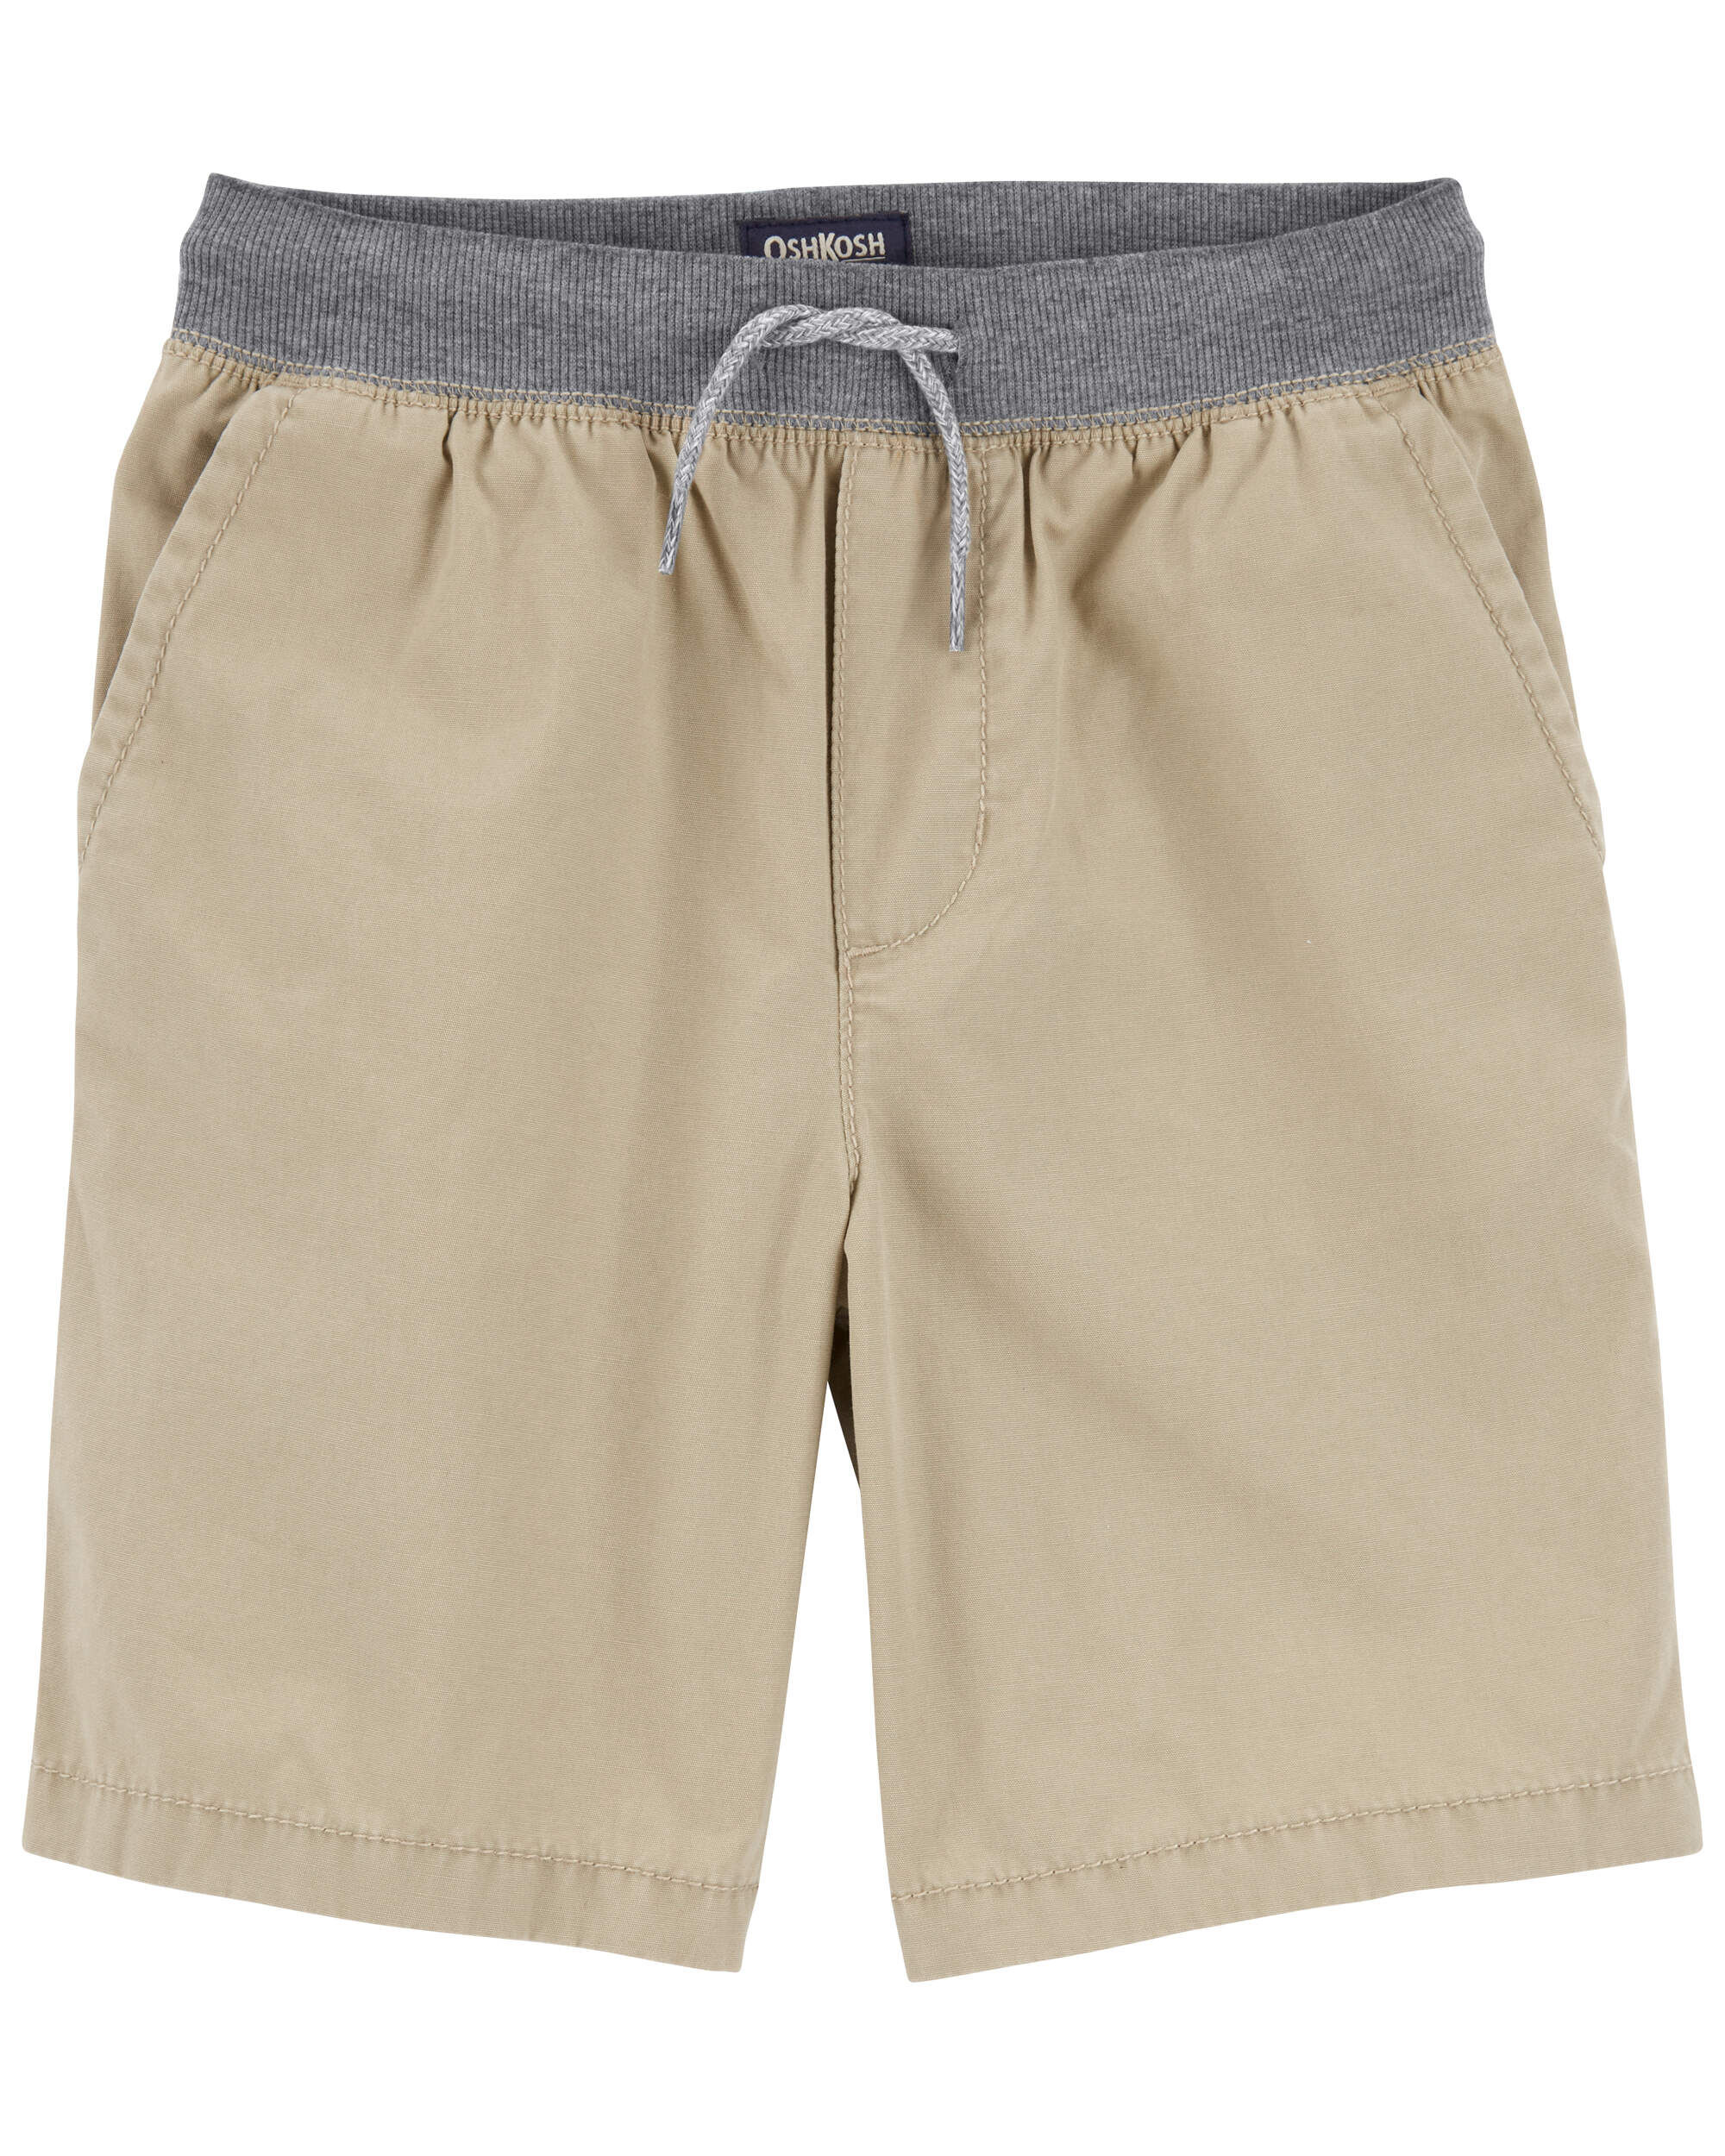 Navy Twill Shorts | Carter's Oshkosh Canada